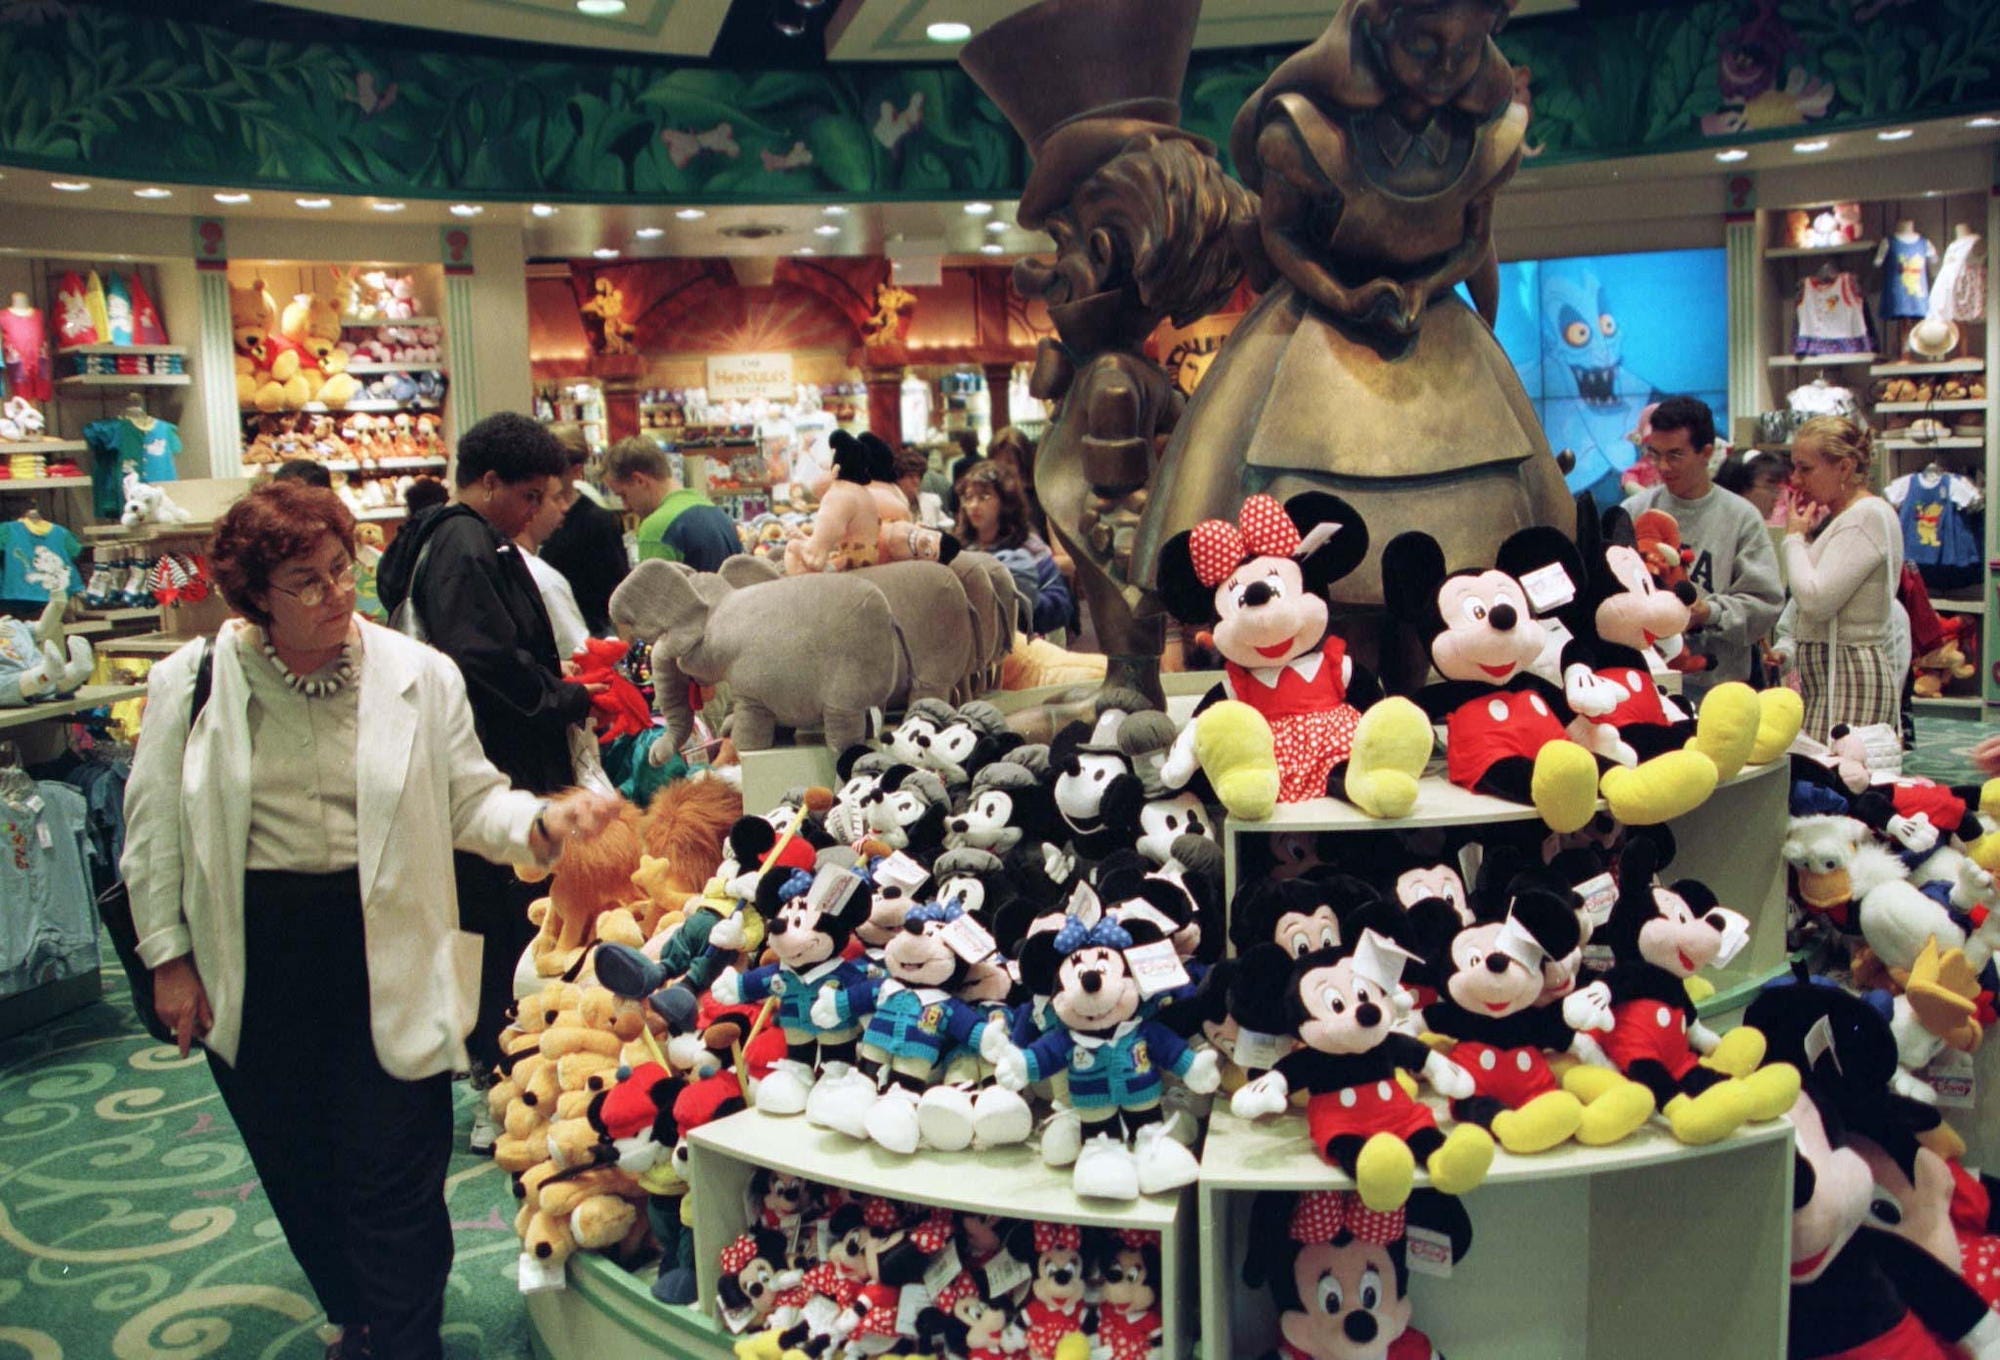 Am 18. Juni 1997 kaufen Menschen in einem New Yorker Disney Store ein.